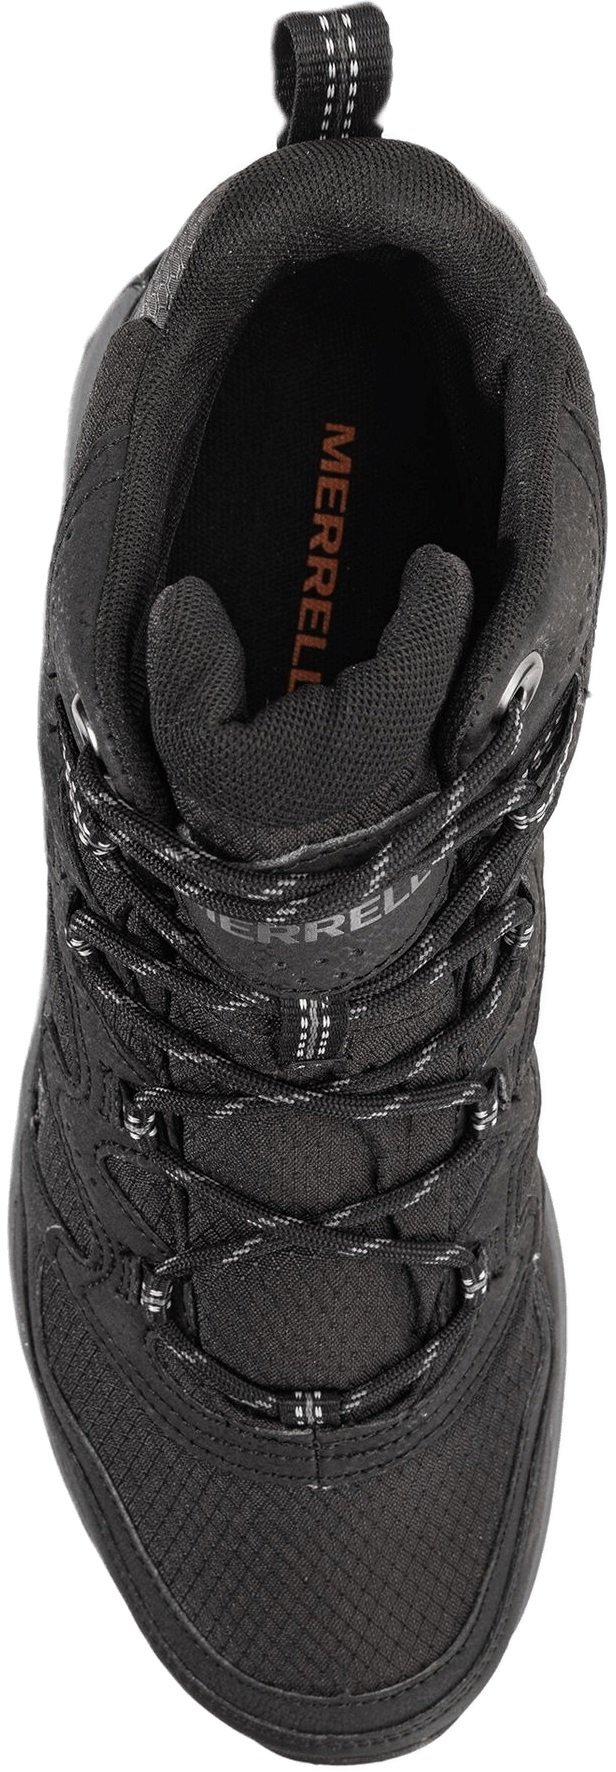 Ботинки мужские Merrell West Rim Sport MID GTX black 43 черный фото 6